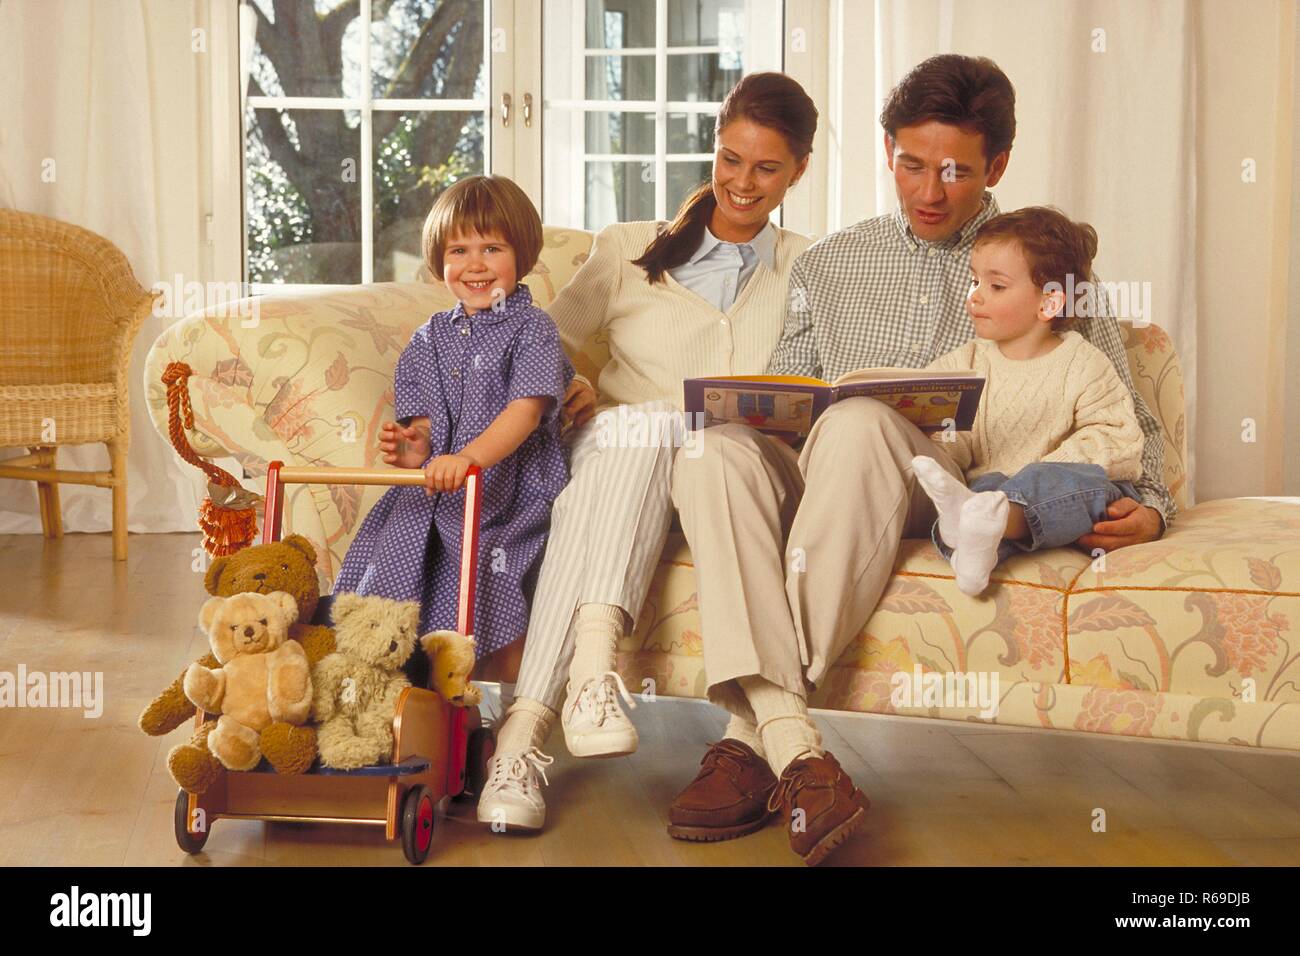 Innenraum, Gruppenbild, Familie, die Eltern sitzen mit ihren 2 Kindern auf dem Sofa, der Vater liest aus einem Bilderbuch vor Stock Photo